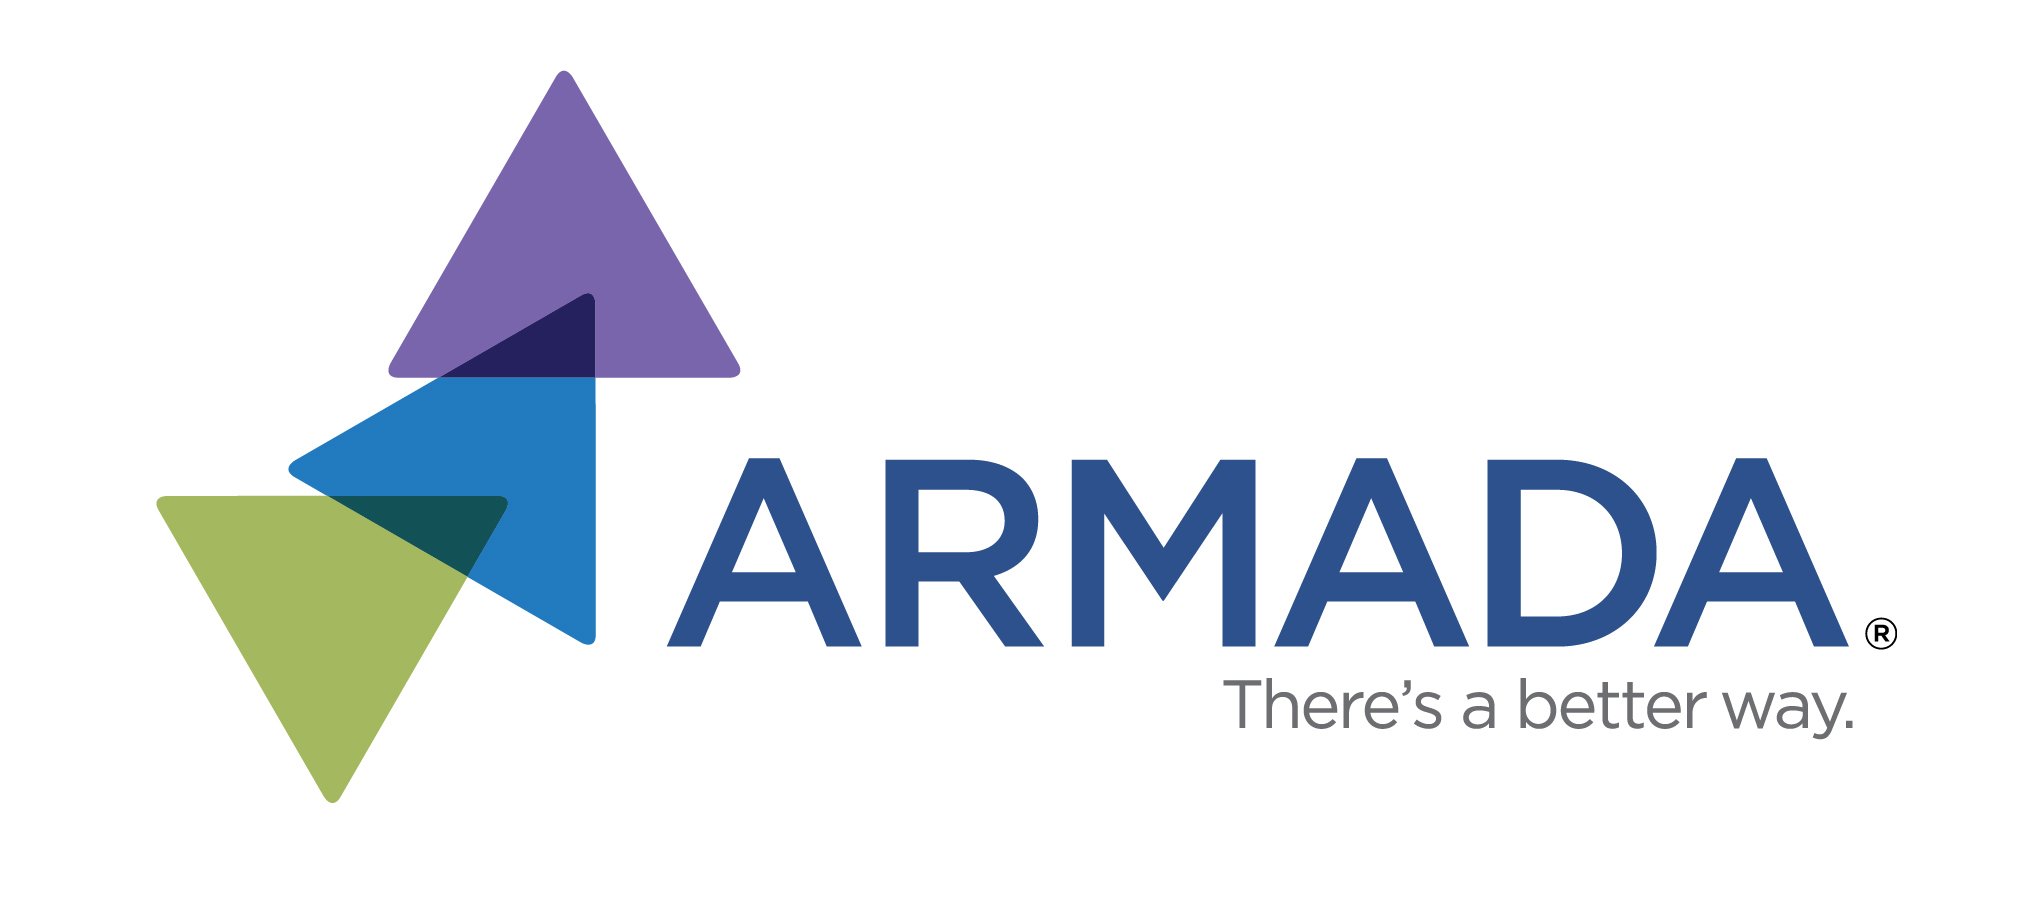 ARMADA logo_web version